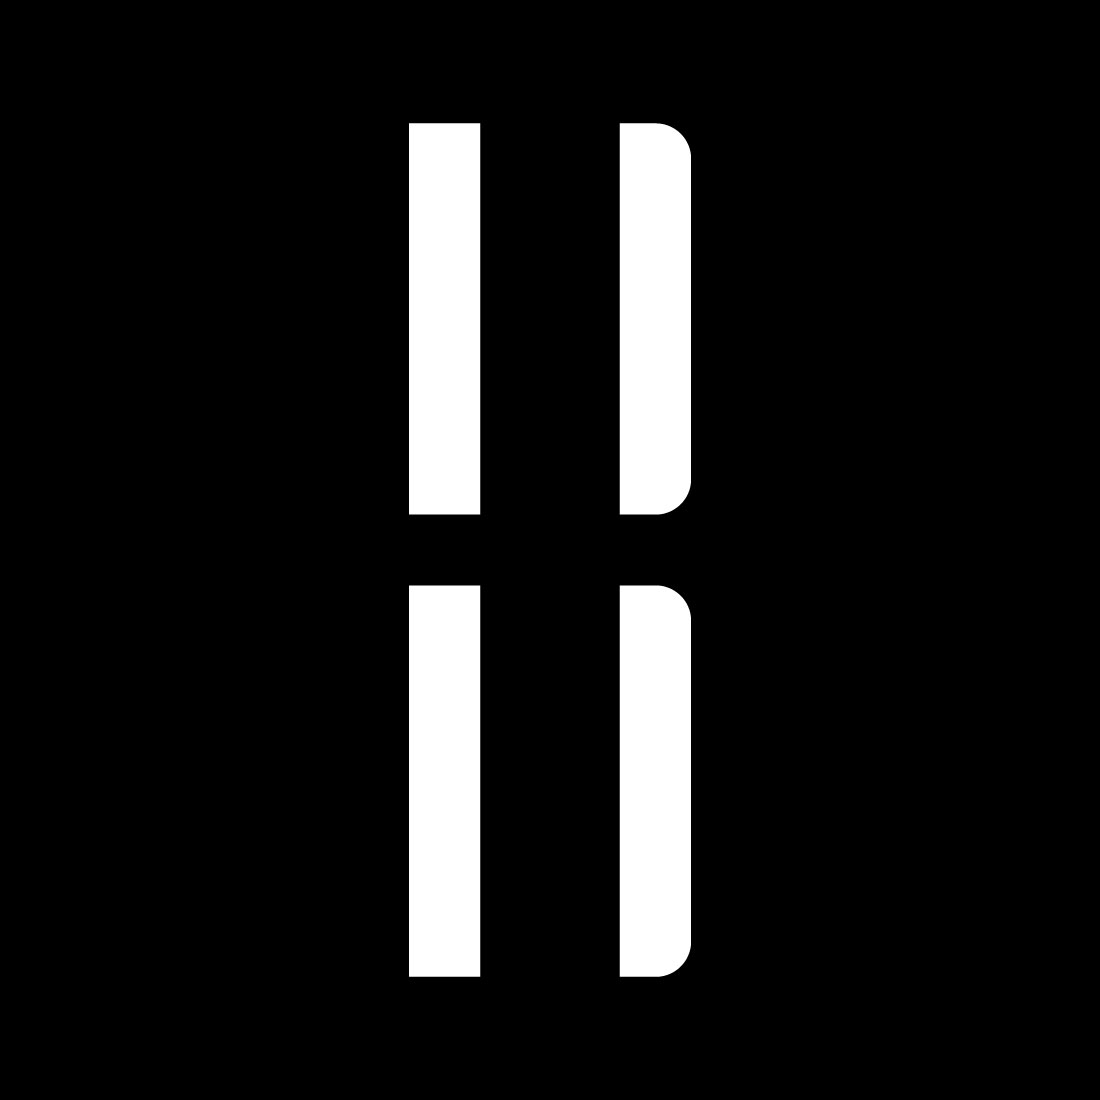 B Monogram Letter Logo preview image.